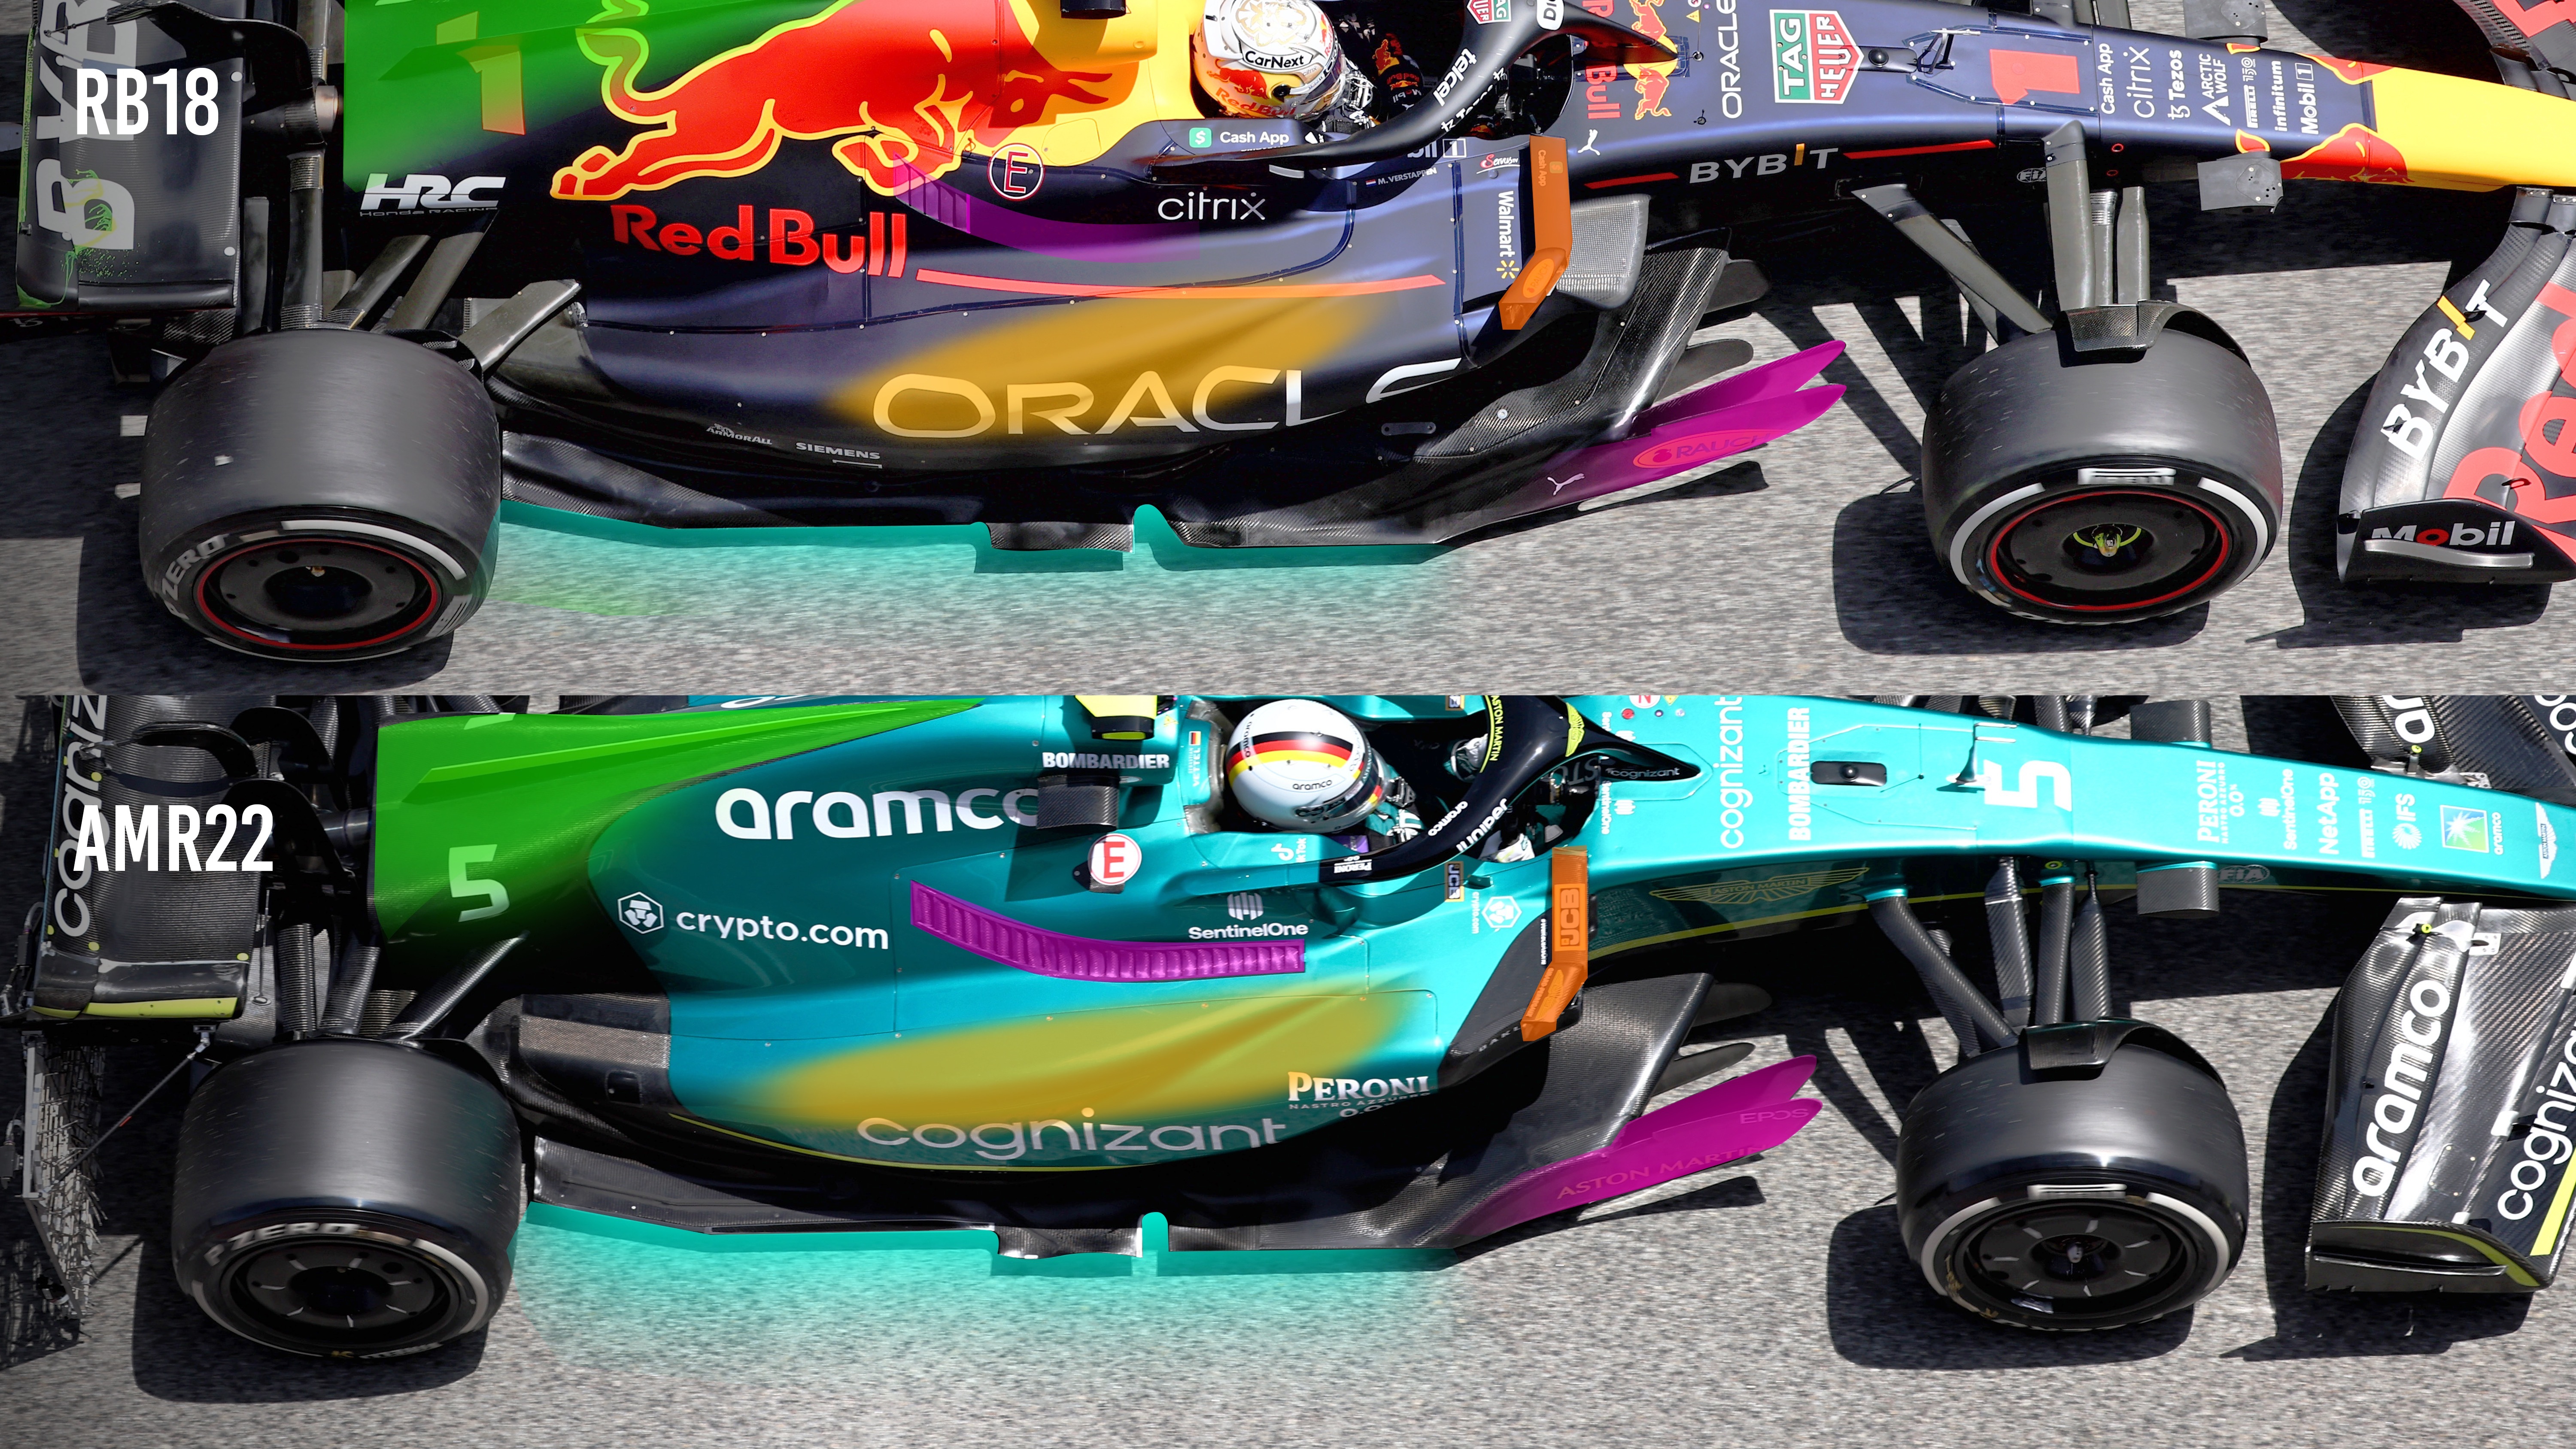 eftertiden hovedlandet minimal Gary Anderson's verdict on Aston Martin's Red Bull copy - The Race